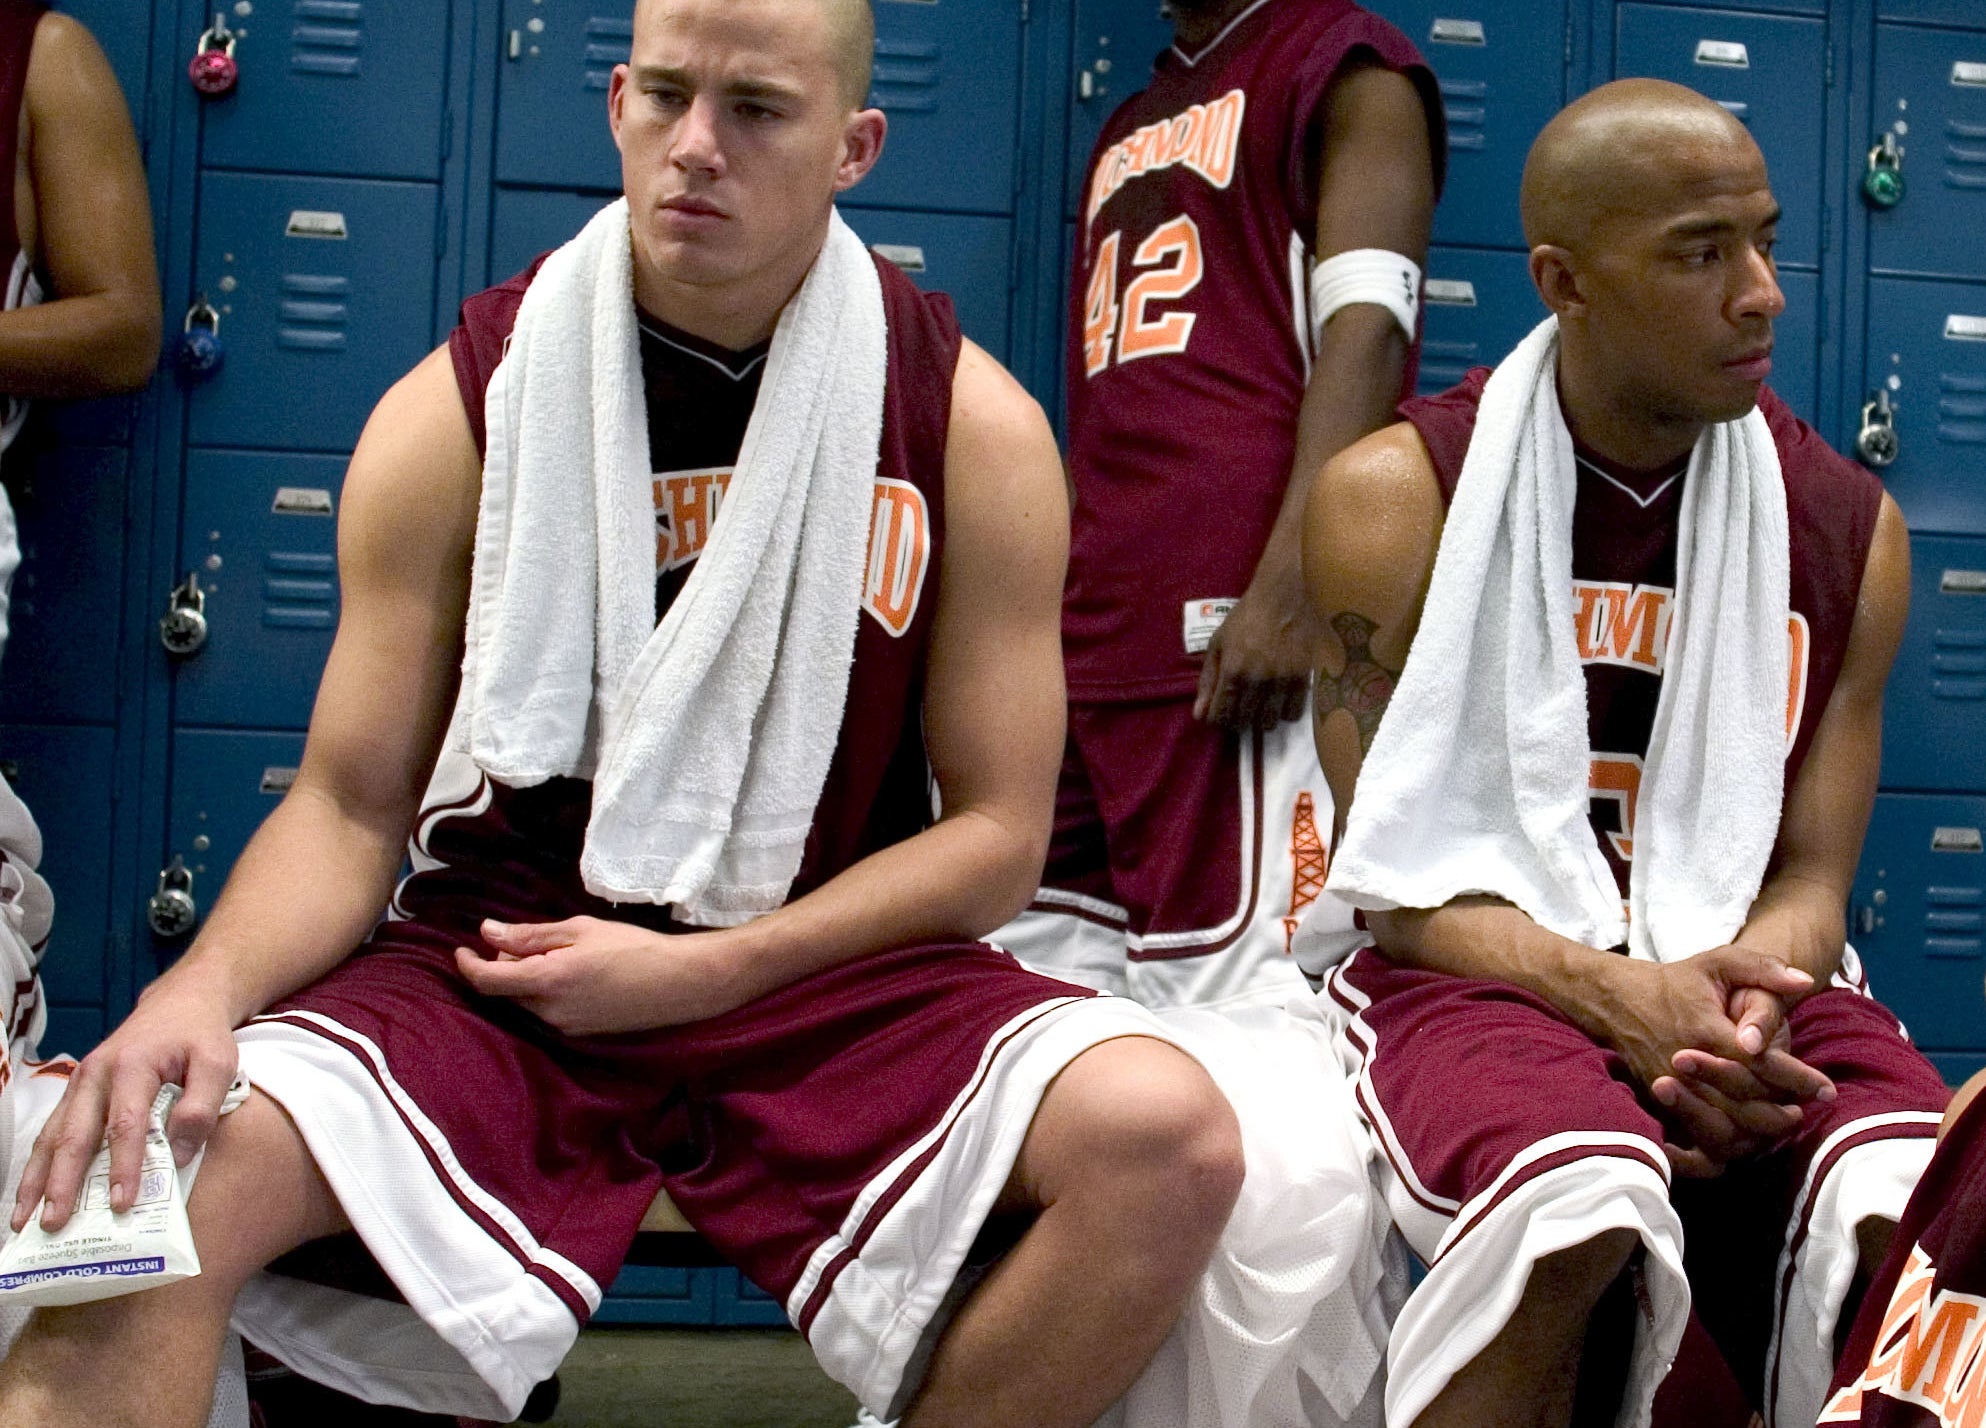 Tatum in the locker room with team mates